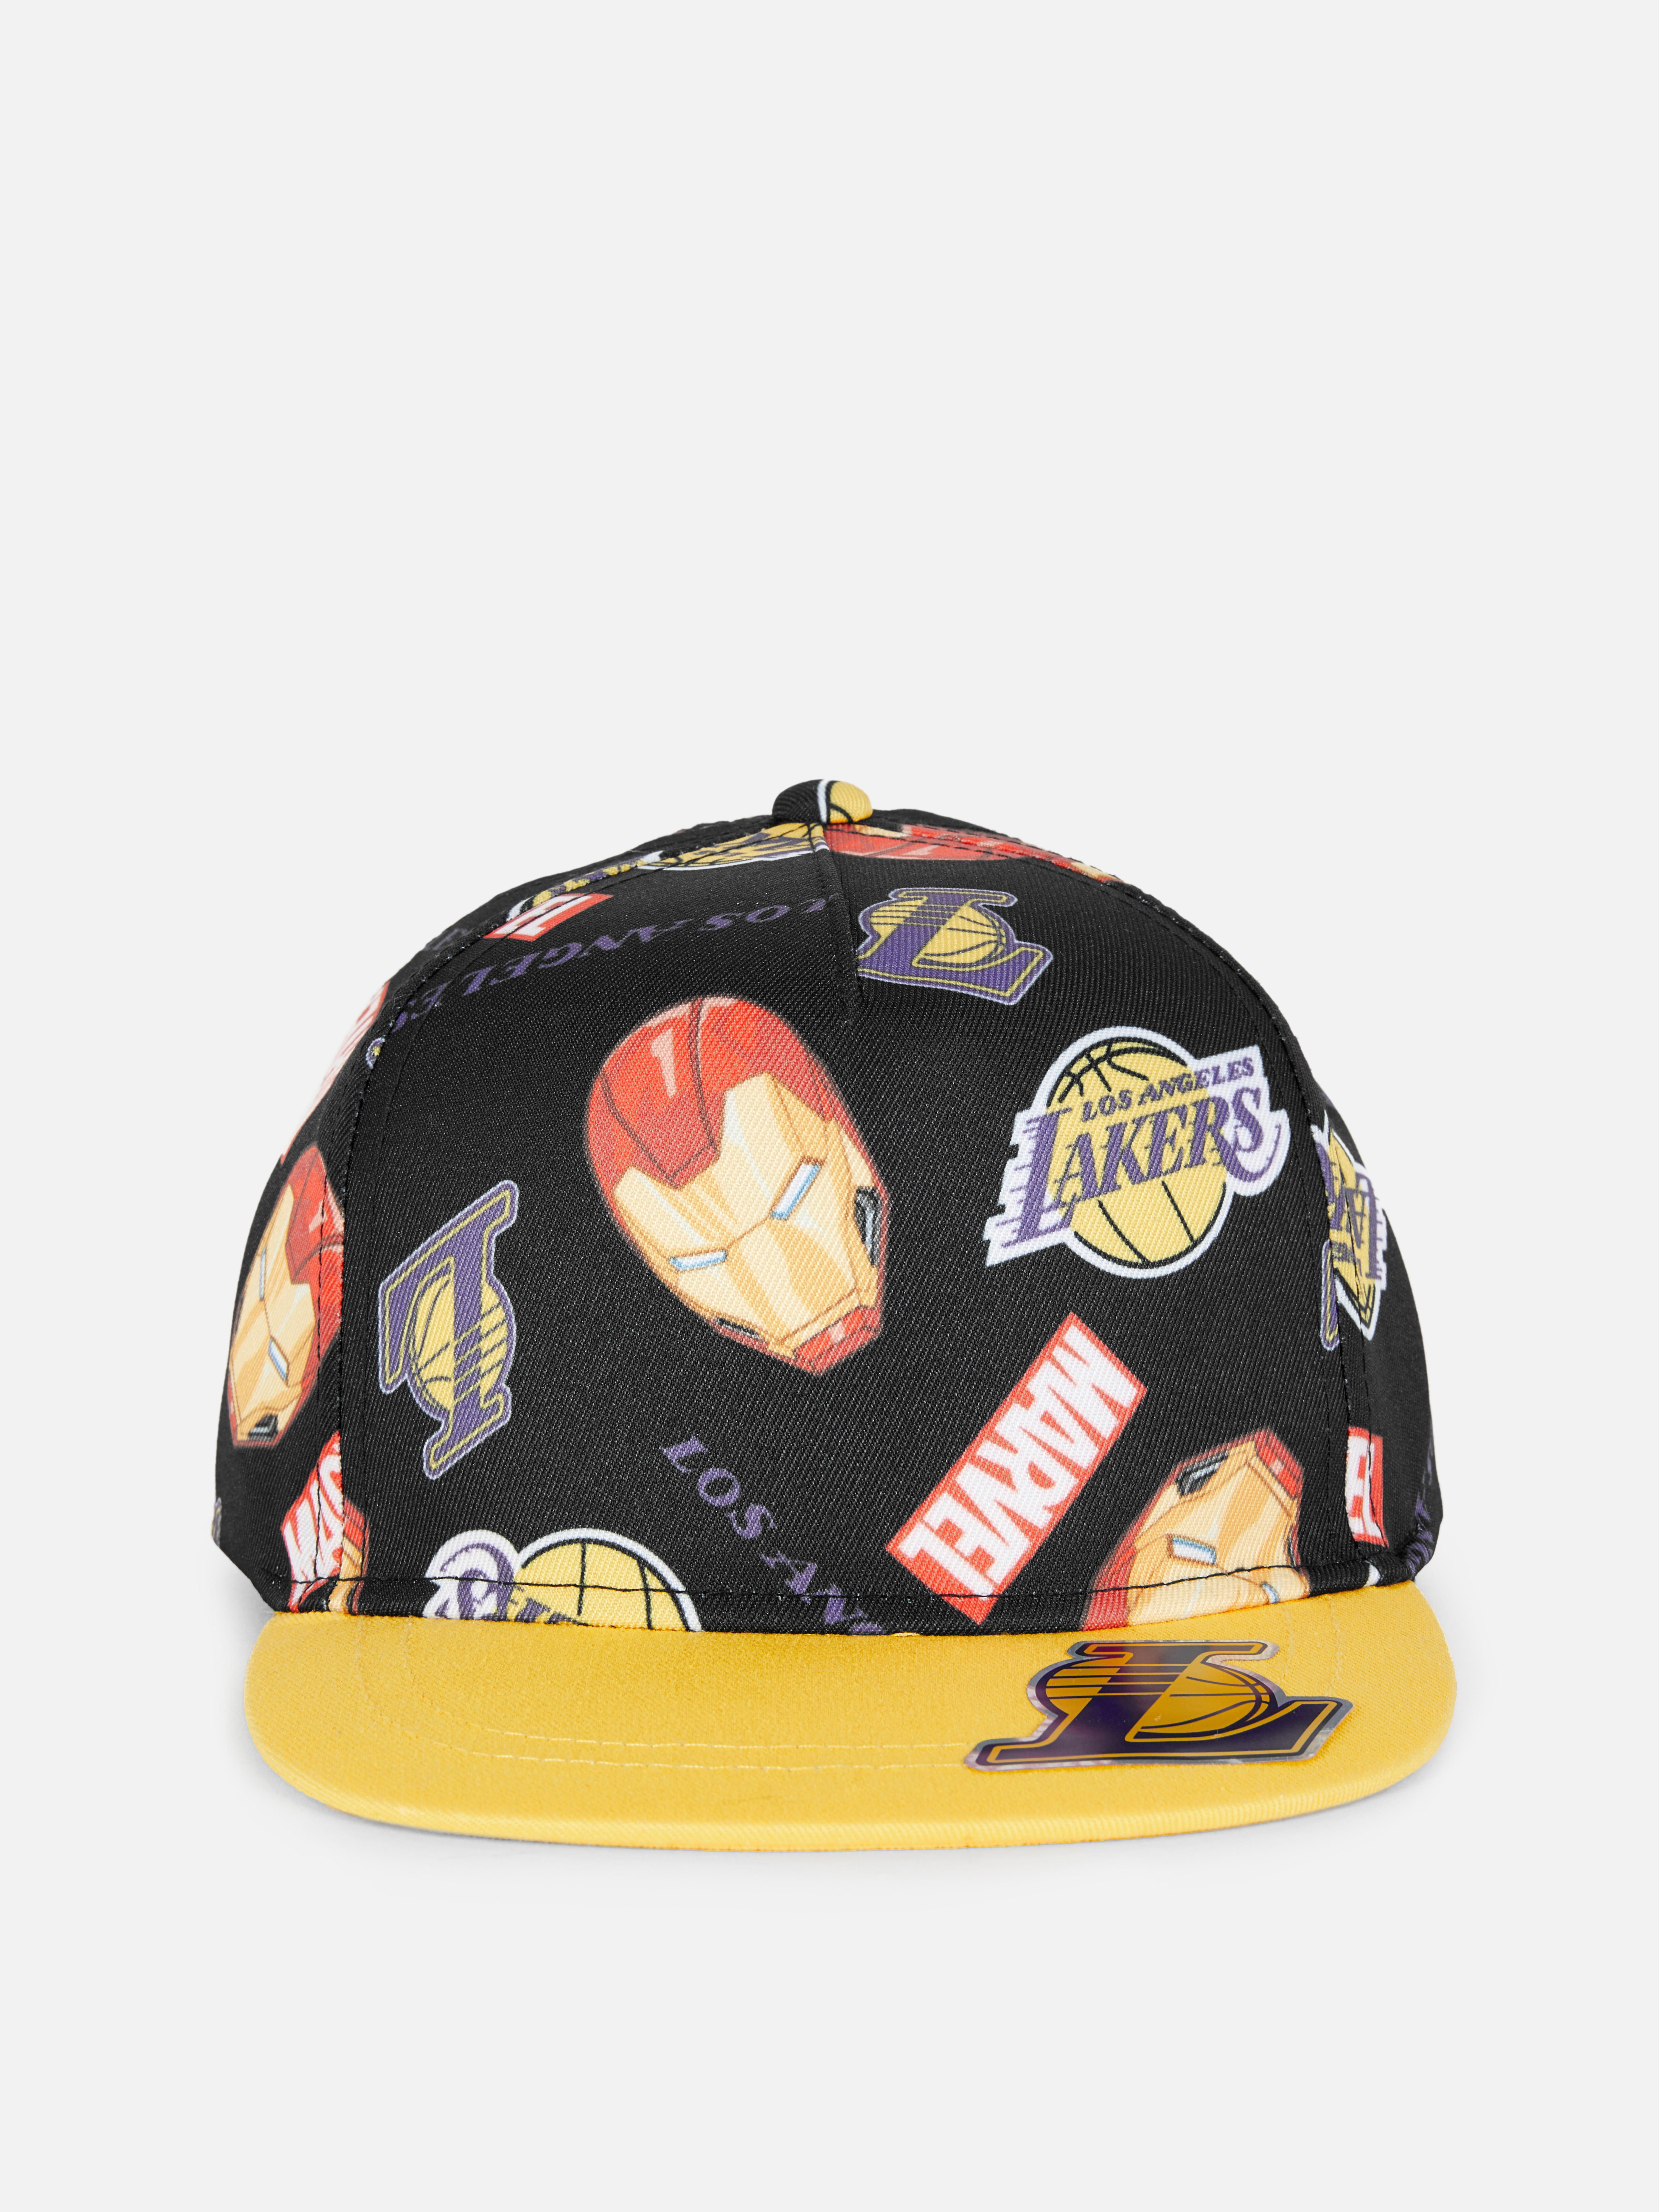 Gorra de Los Angeles Lakers de la NBA y Marvel